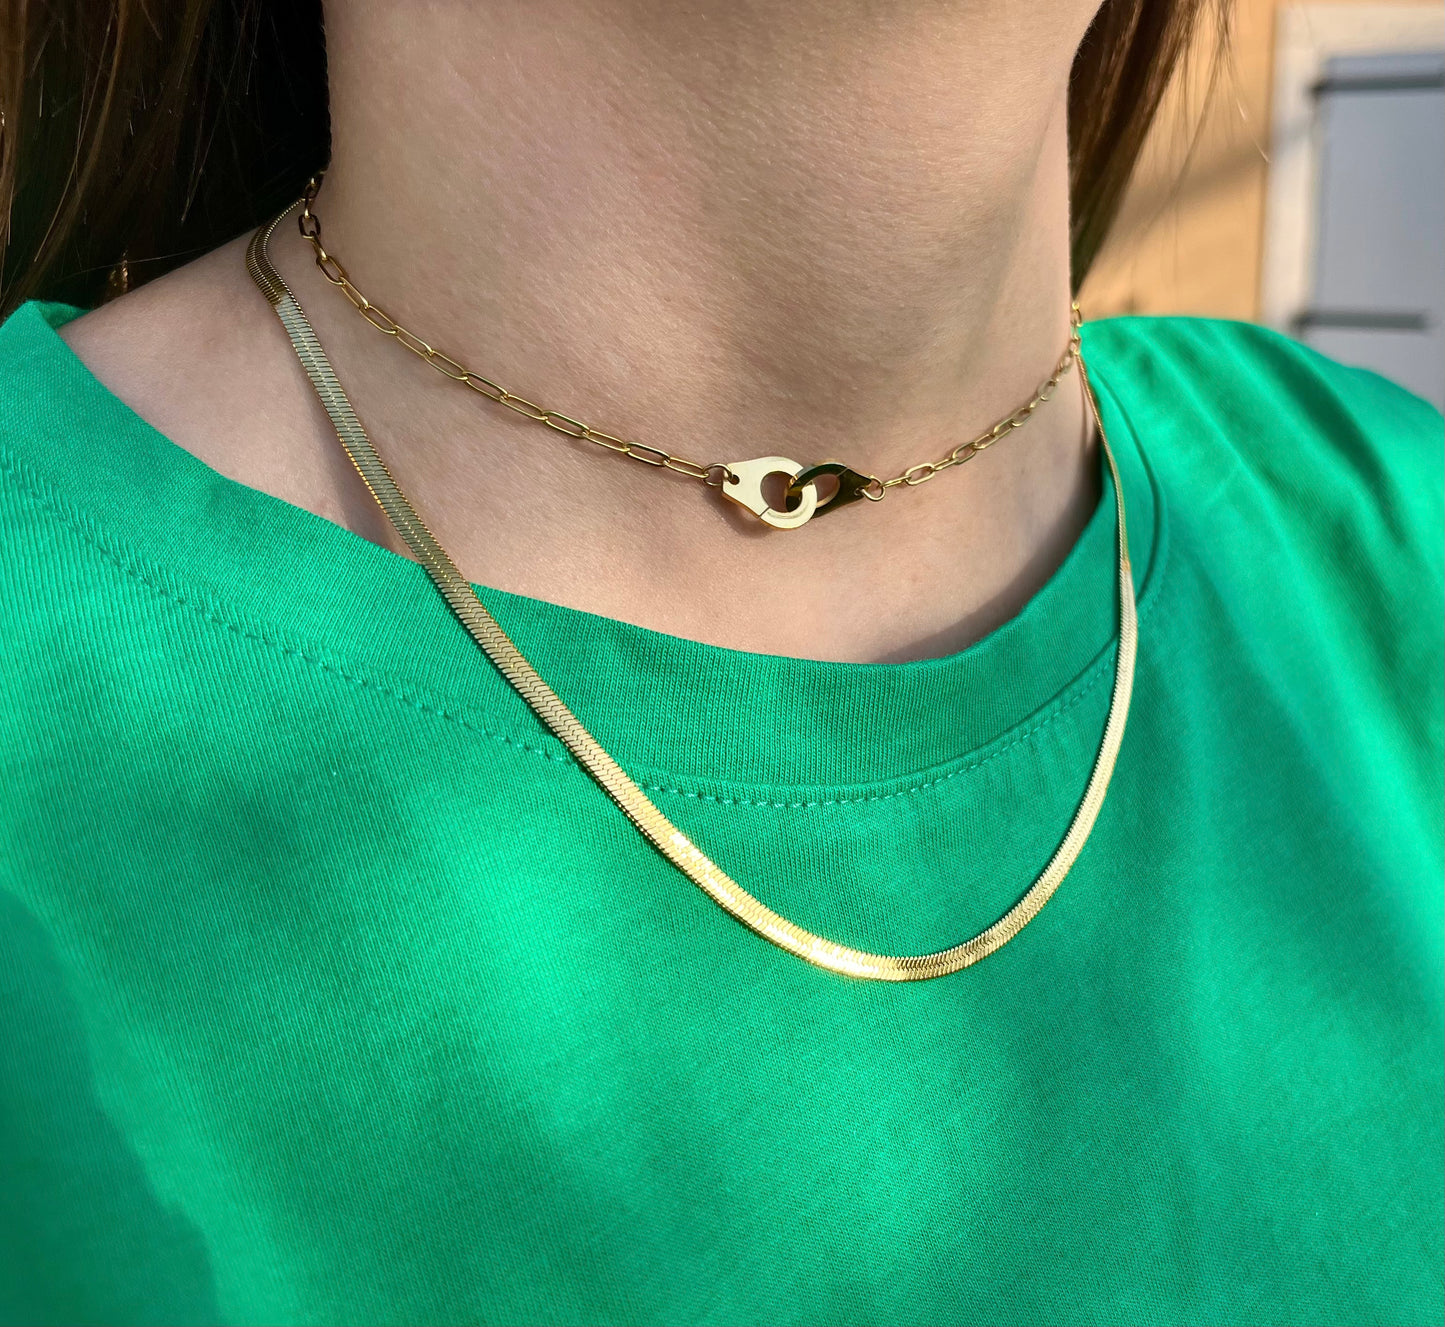 Cette photo représente une femme portant un collier menottes doré. Ce collier est en acier inoxydable cela signifie qu'il est résistant à l'eau et qu'il ne ternit pas avec le temps. Ce collier est ajustable en ras de cou et représente deux menottes sui s'entrelacent. 